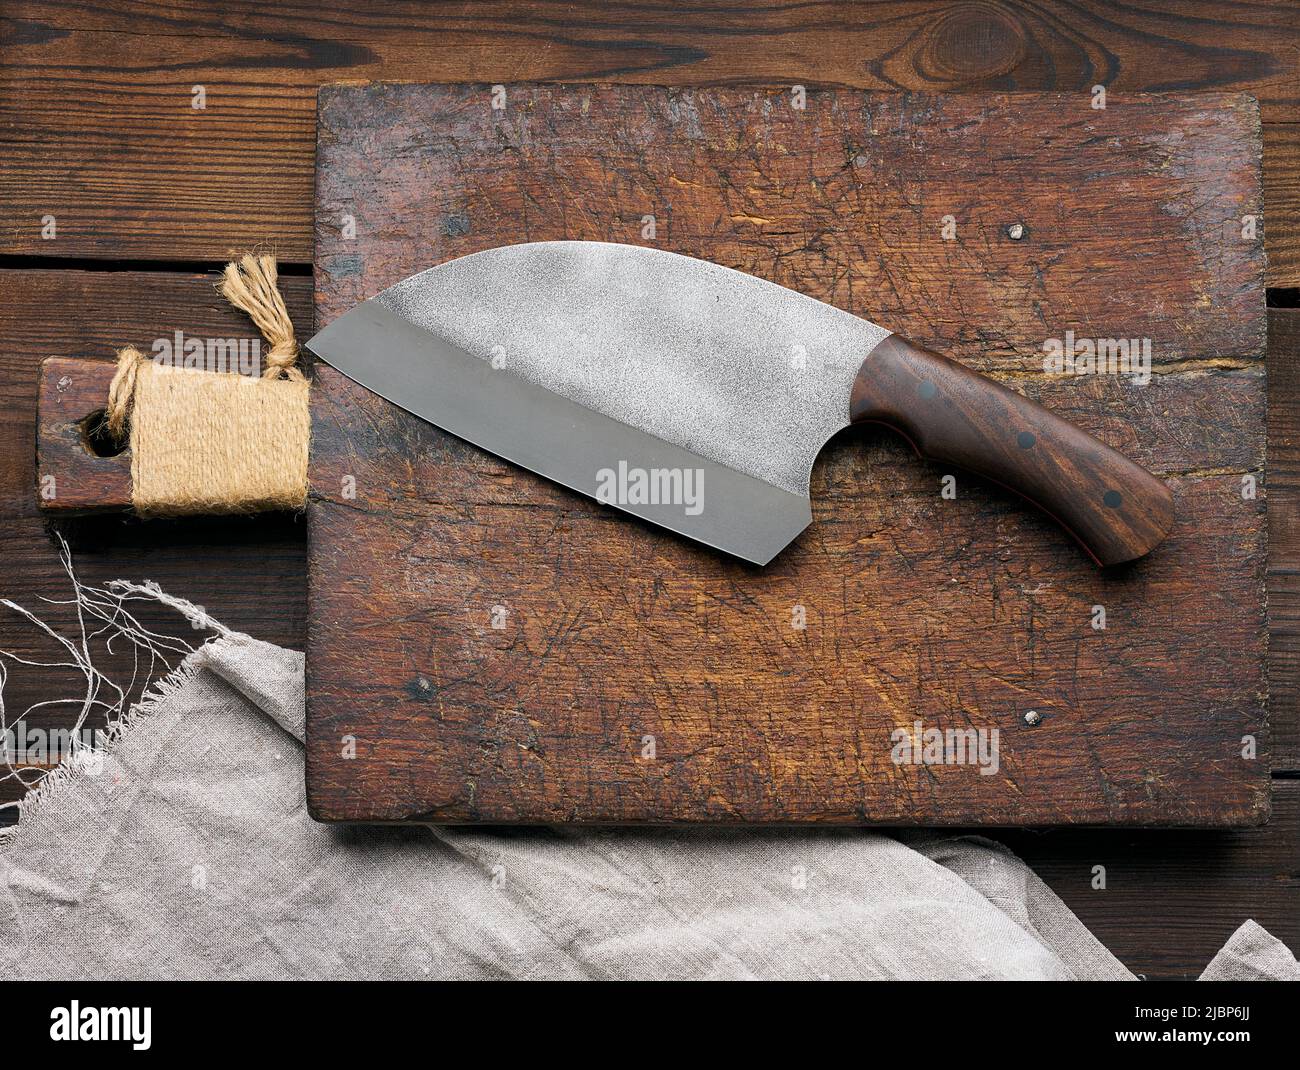 Grande coltello da cucina su un tagliere vuoto in legno, vista dall'alto  Foto stock - Alamy